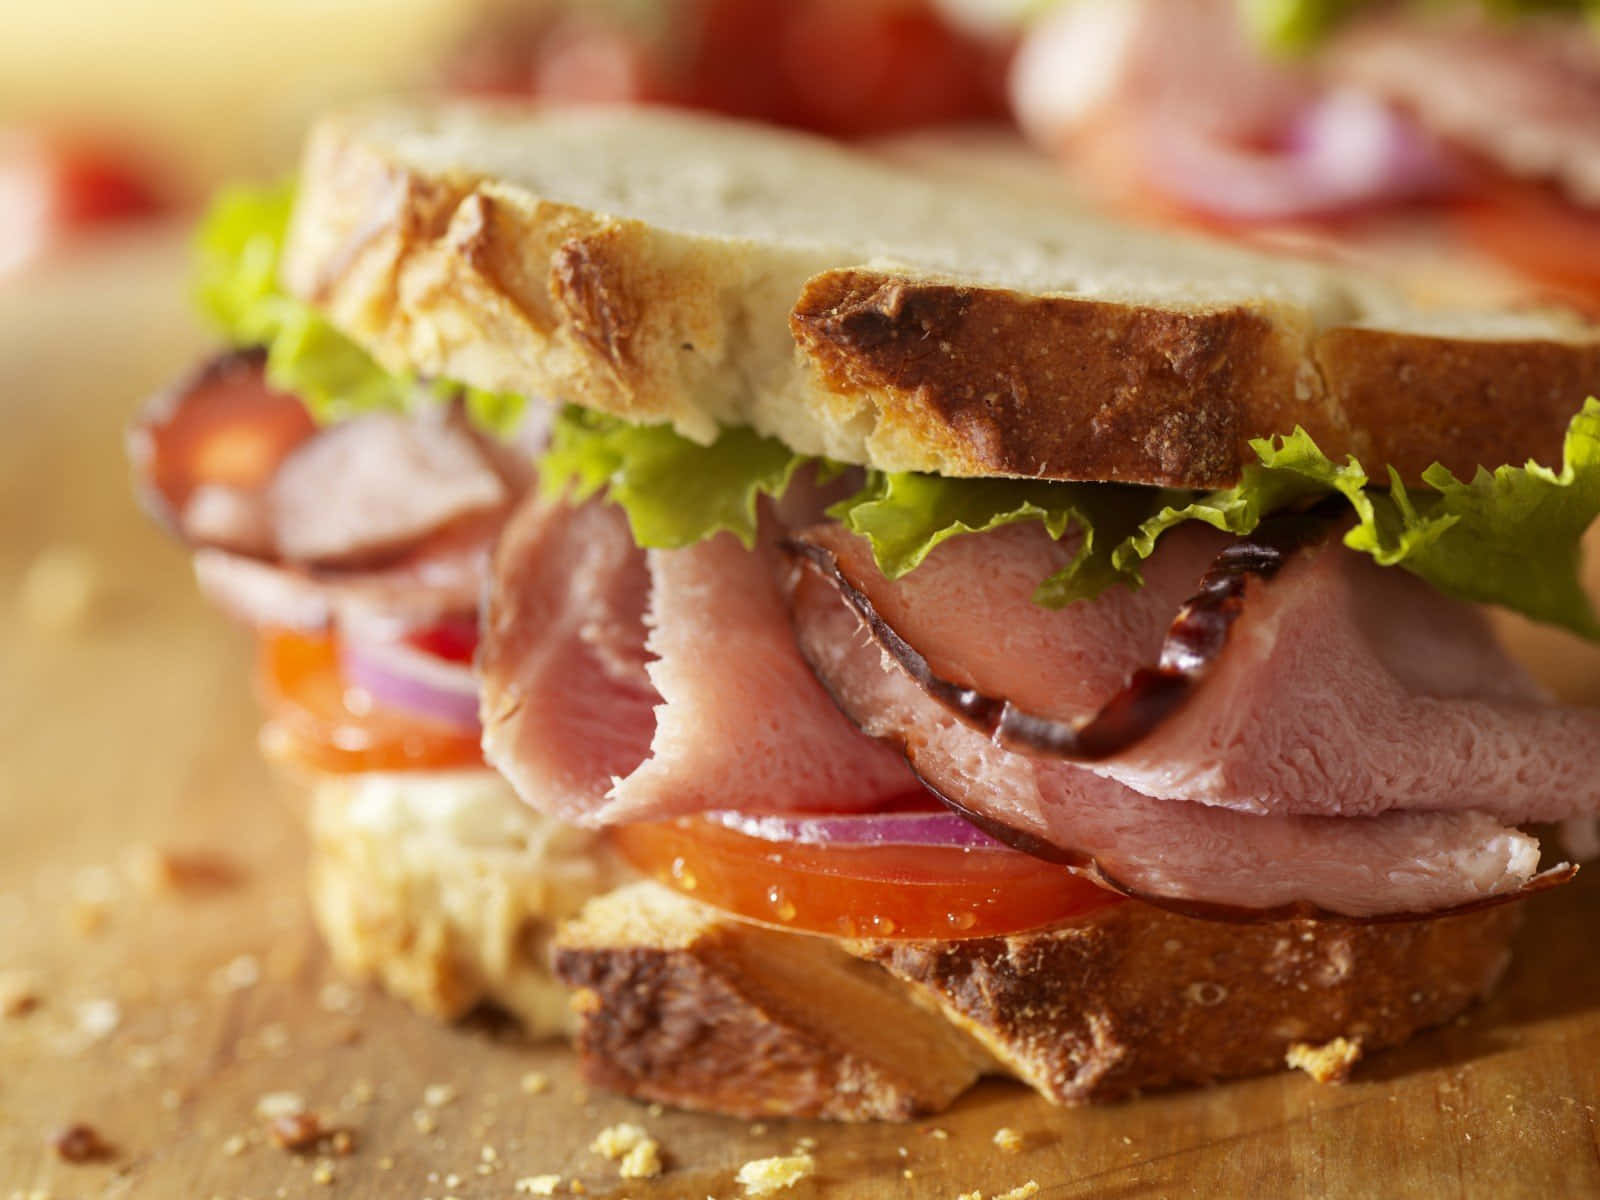 Disfrutade La Deliciosidad De Un Clásico Sándwich.